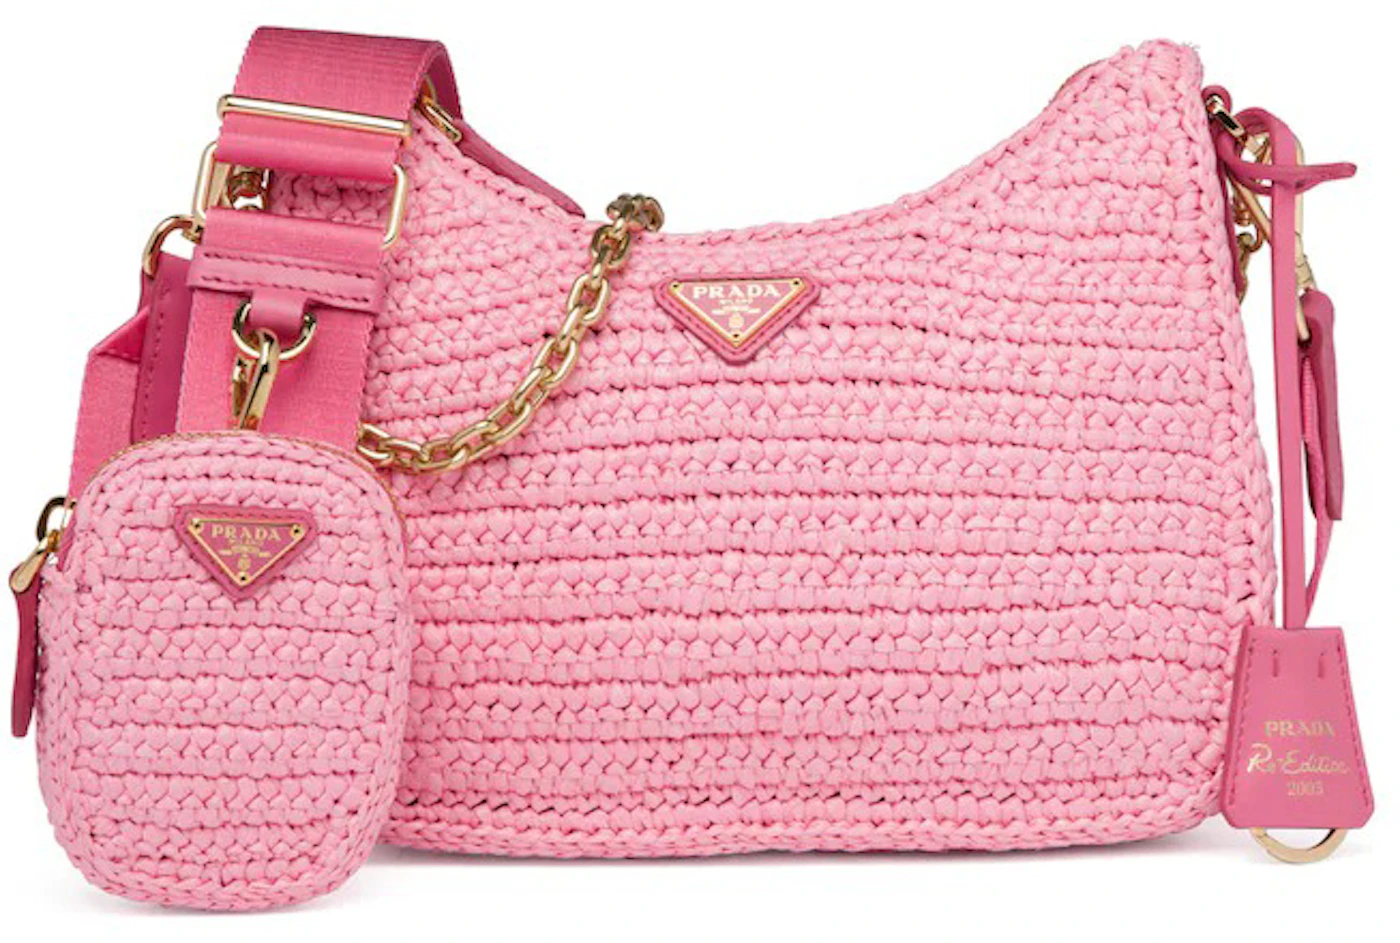 Petal Pink Crochet Tote Bag